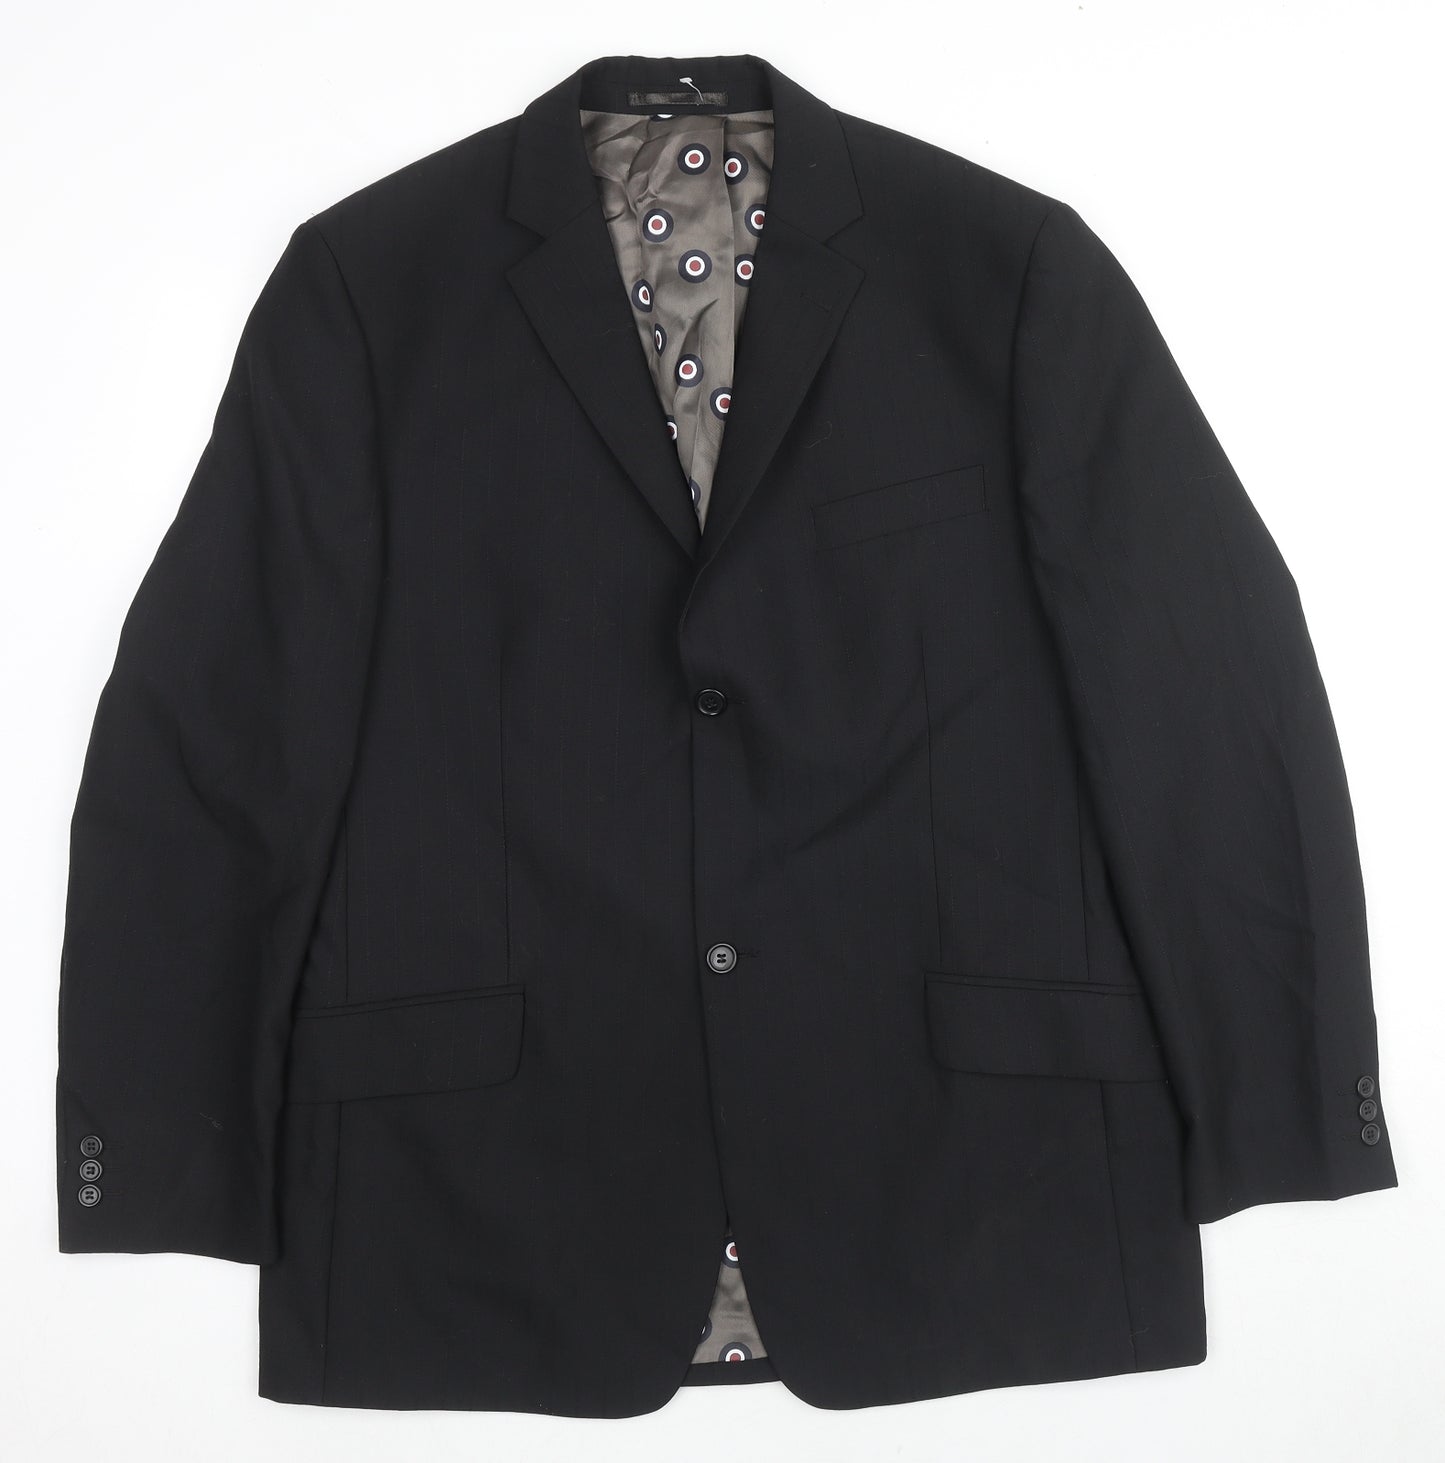 Ben Sherman Mens Black Wool Jacket Suit Jacket Size 42 Regular